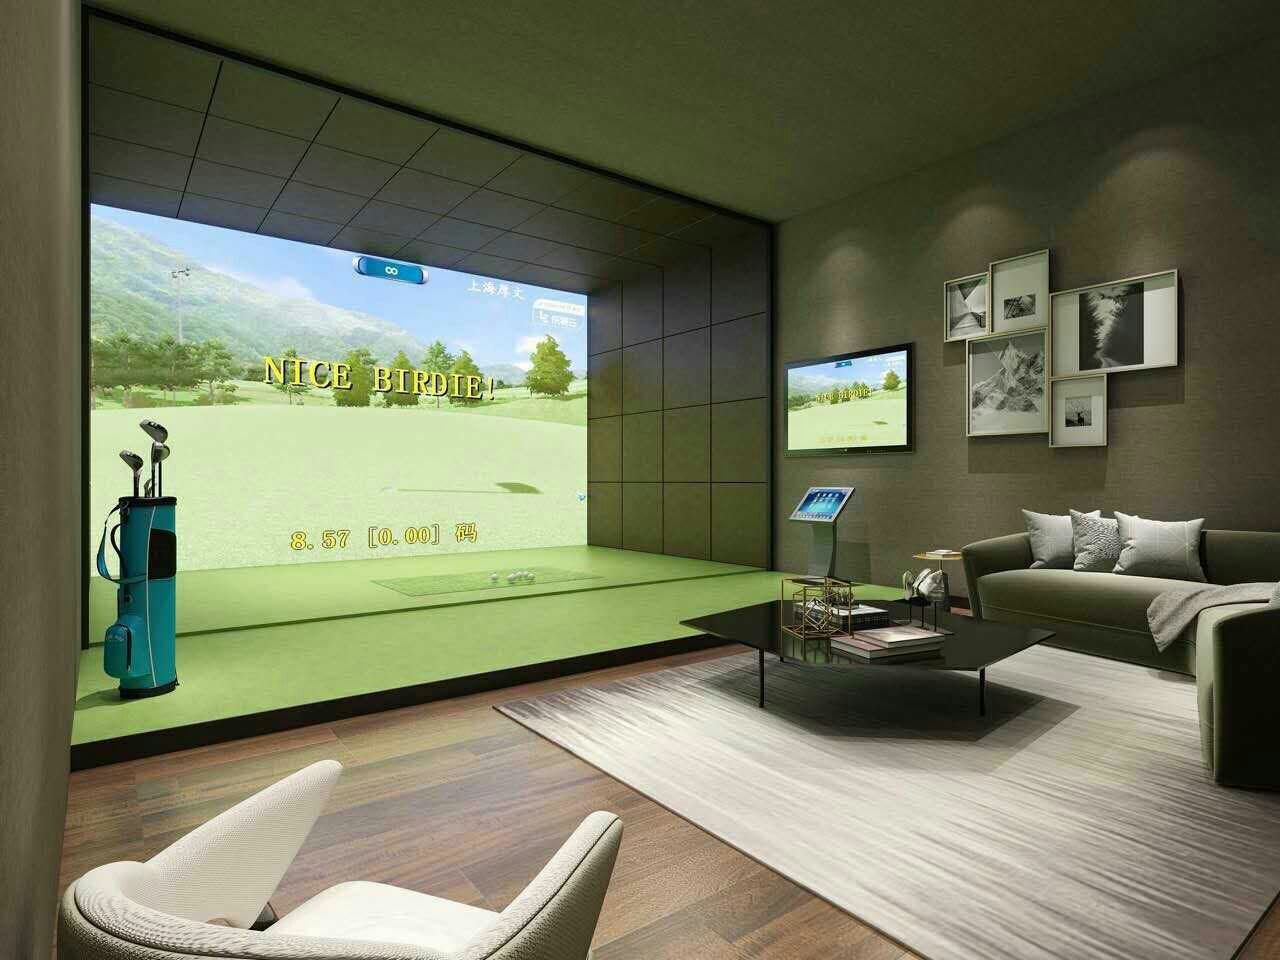 室内高尔夫模拟器厂家-瑞澎智能科技-室内高尔夫模拟器